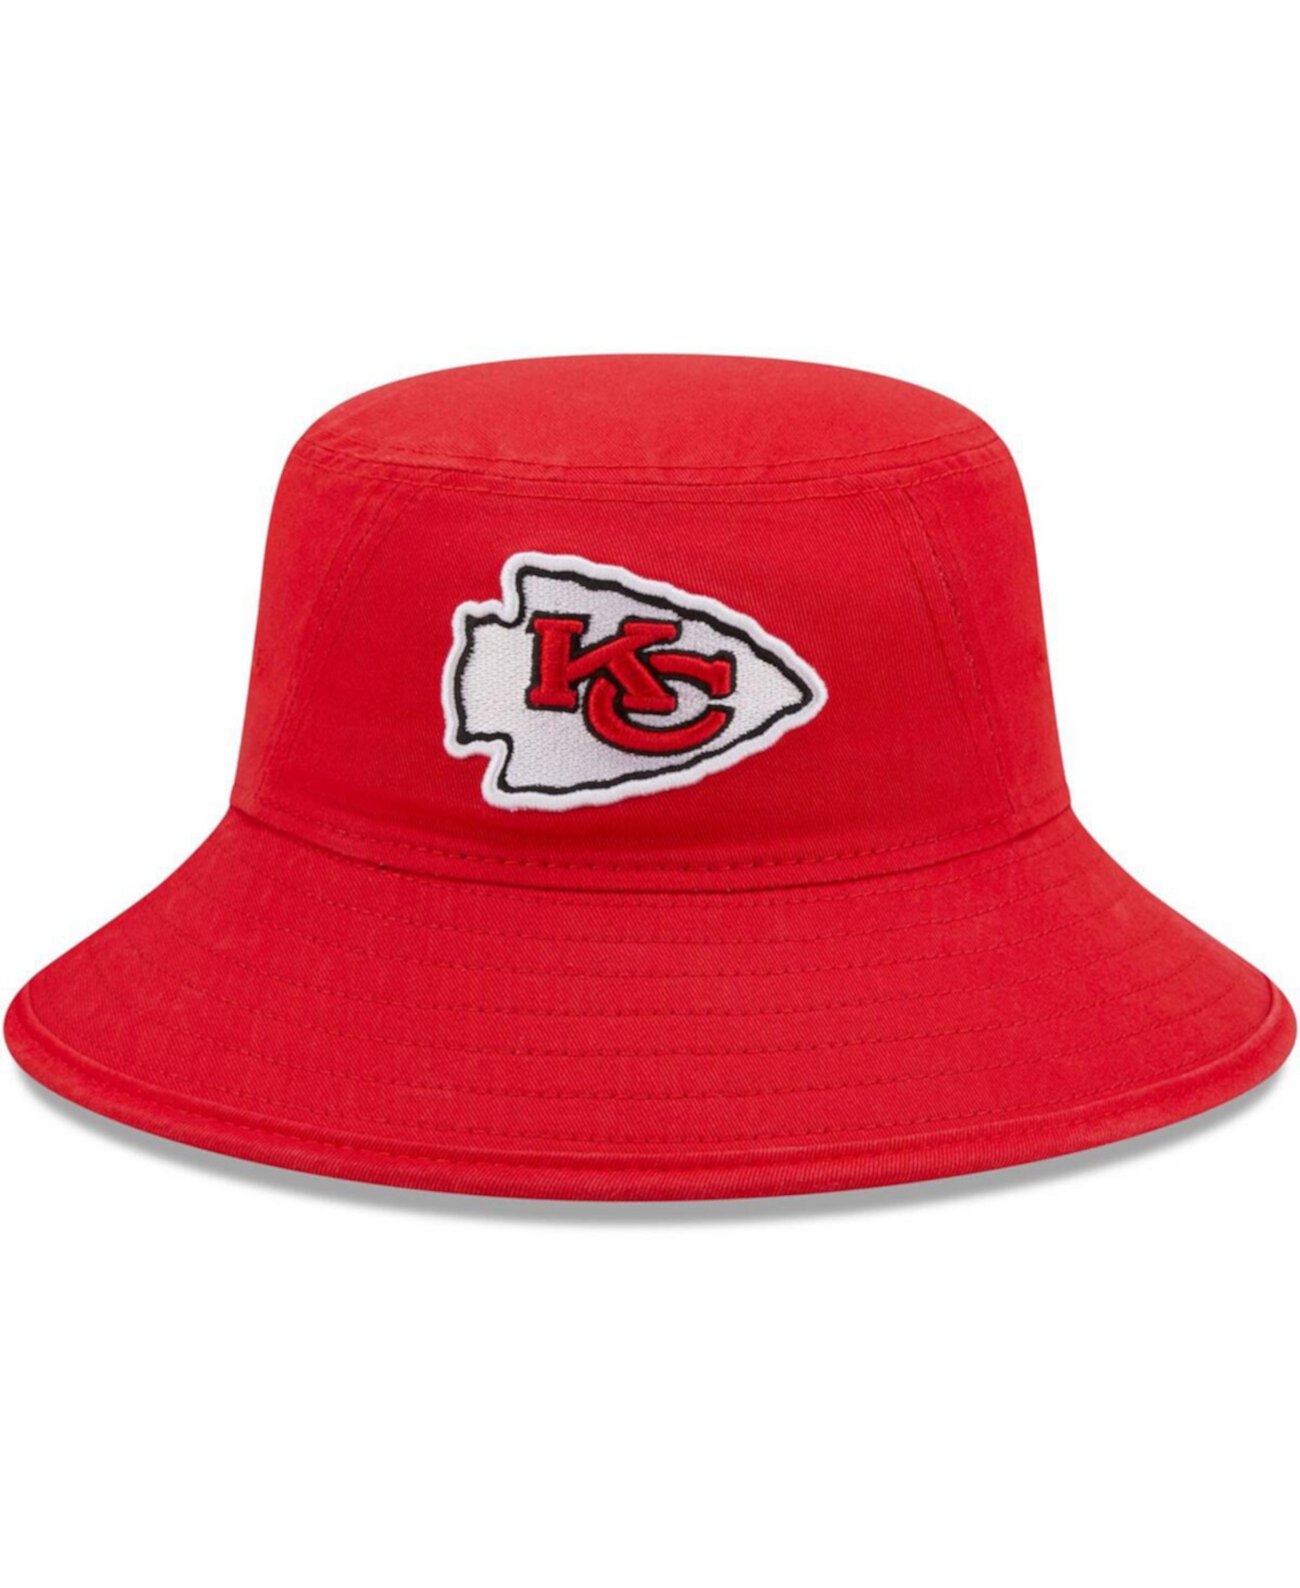 Мужская красная шляпа-ведро с логотипом Kansas City Chiefs New Era